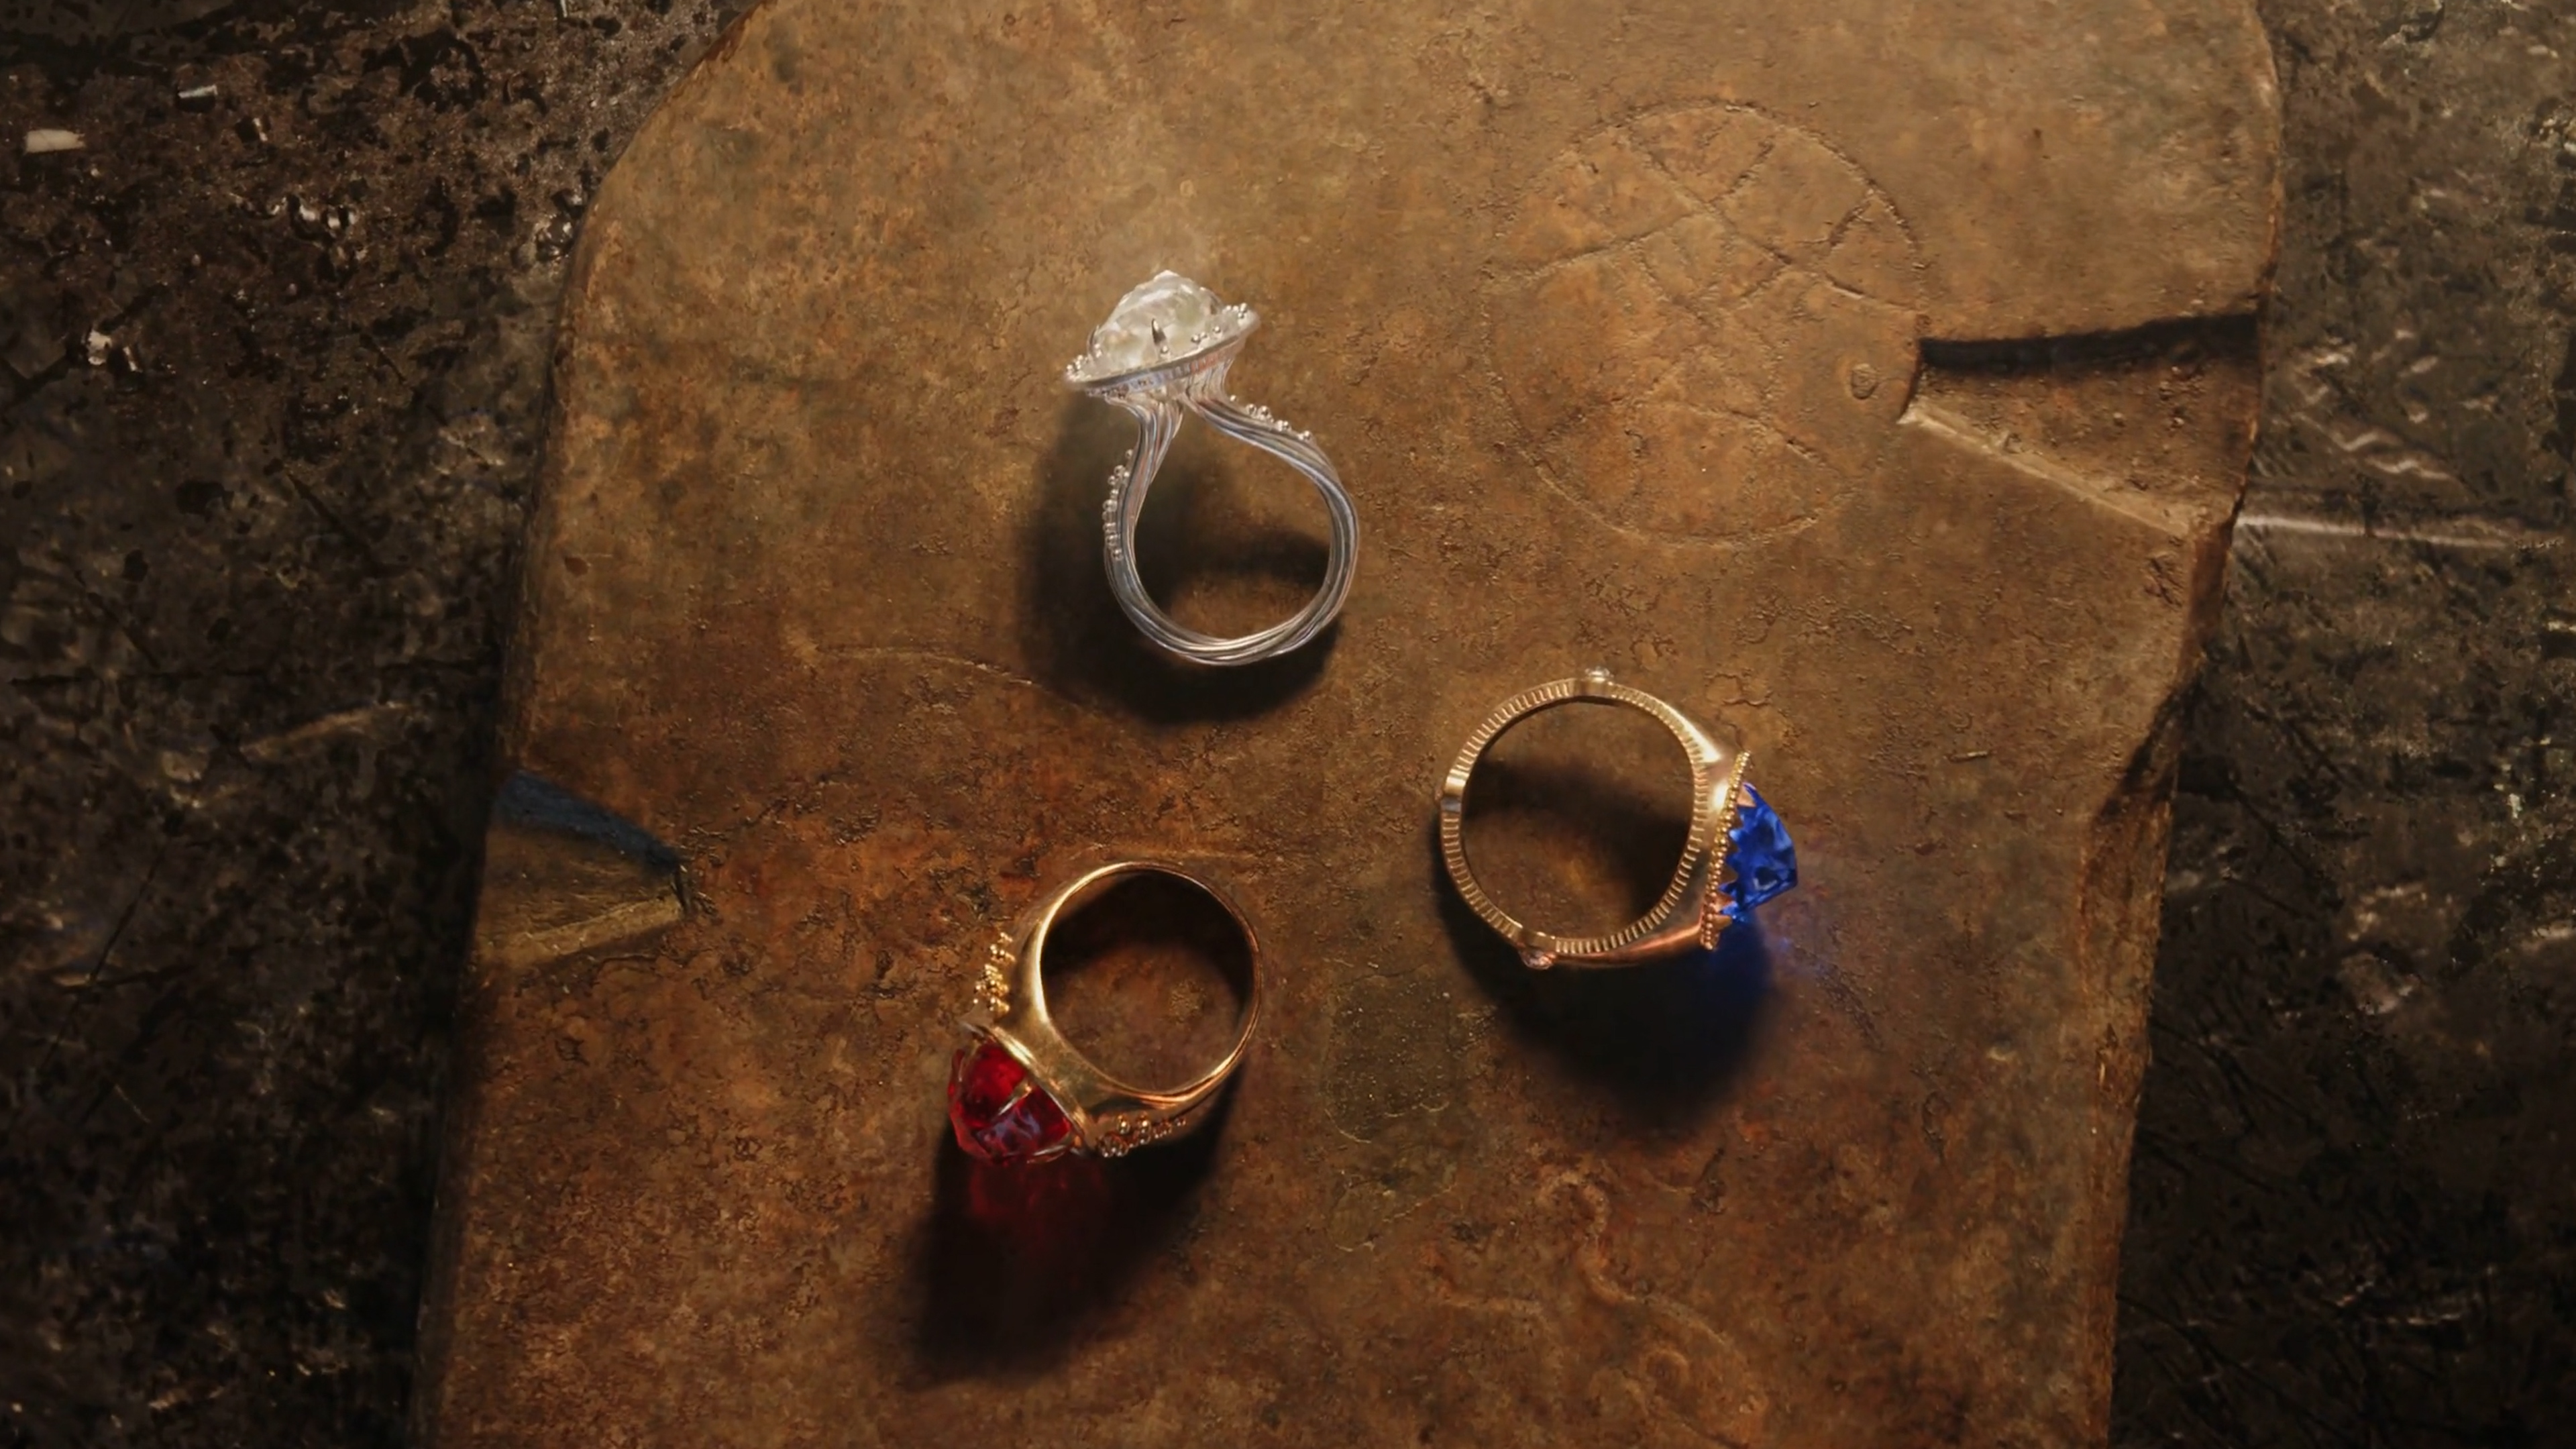 У как у кольца нет конца. Кольца эльфов из Властелина колец. Властелин колец три кольца. Властелин колец кольца власти Саурона. Властелин колец три кольца для эльфов.